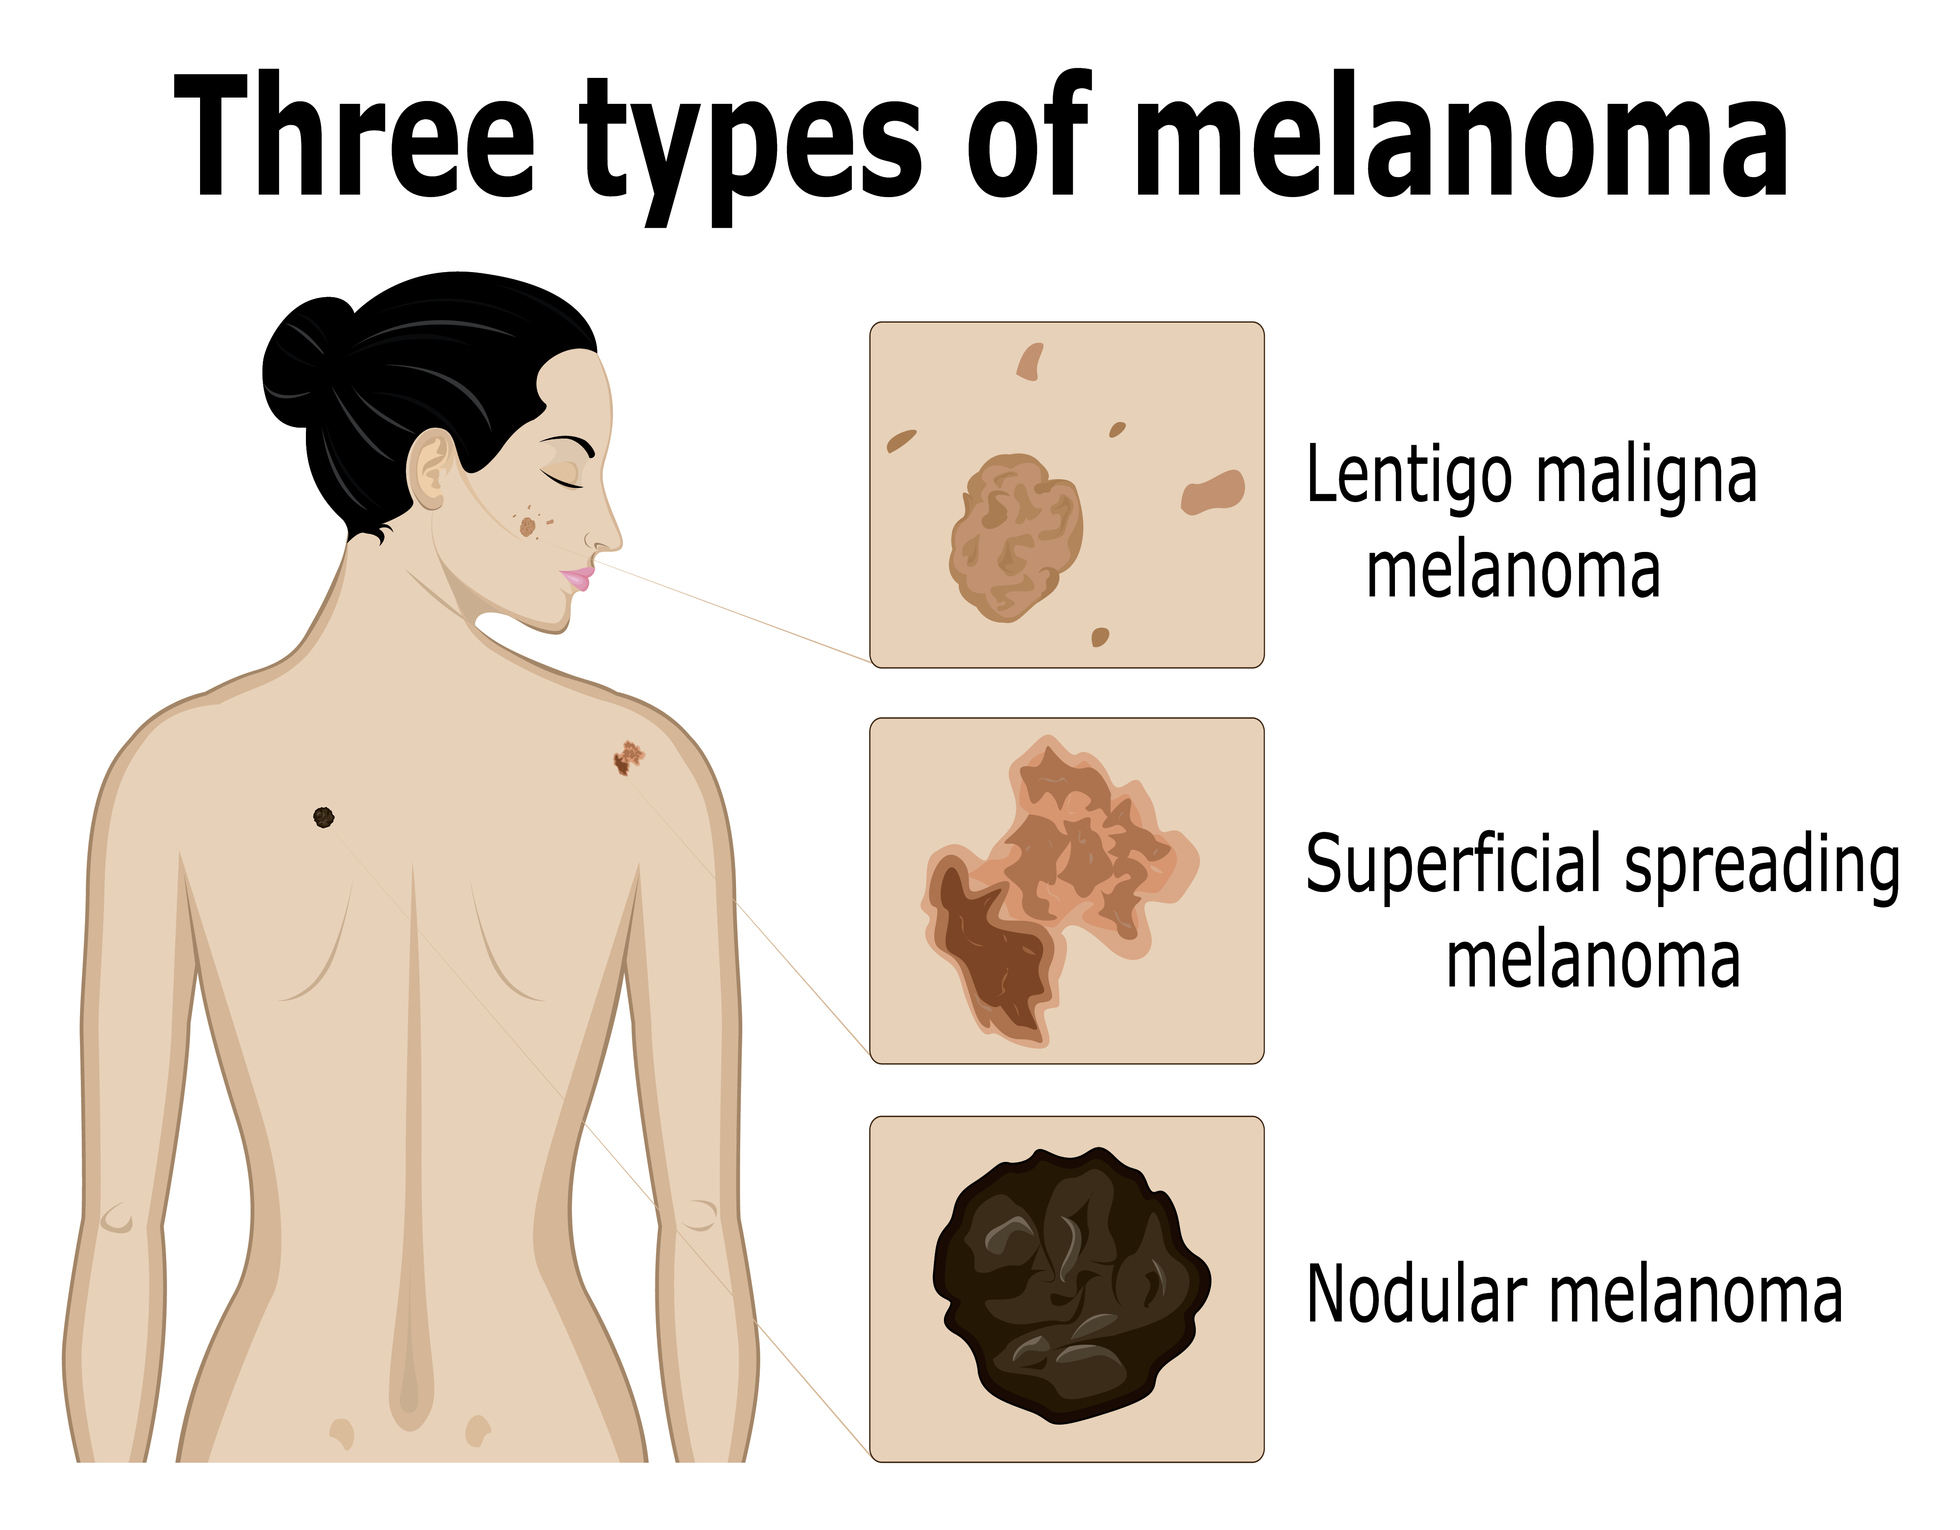 Zobrazení tří typů melanomu